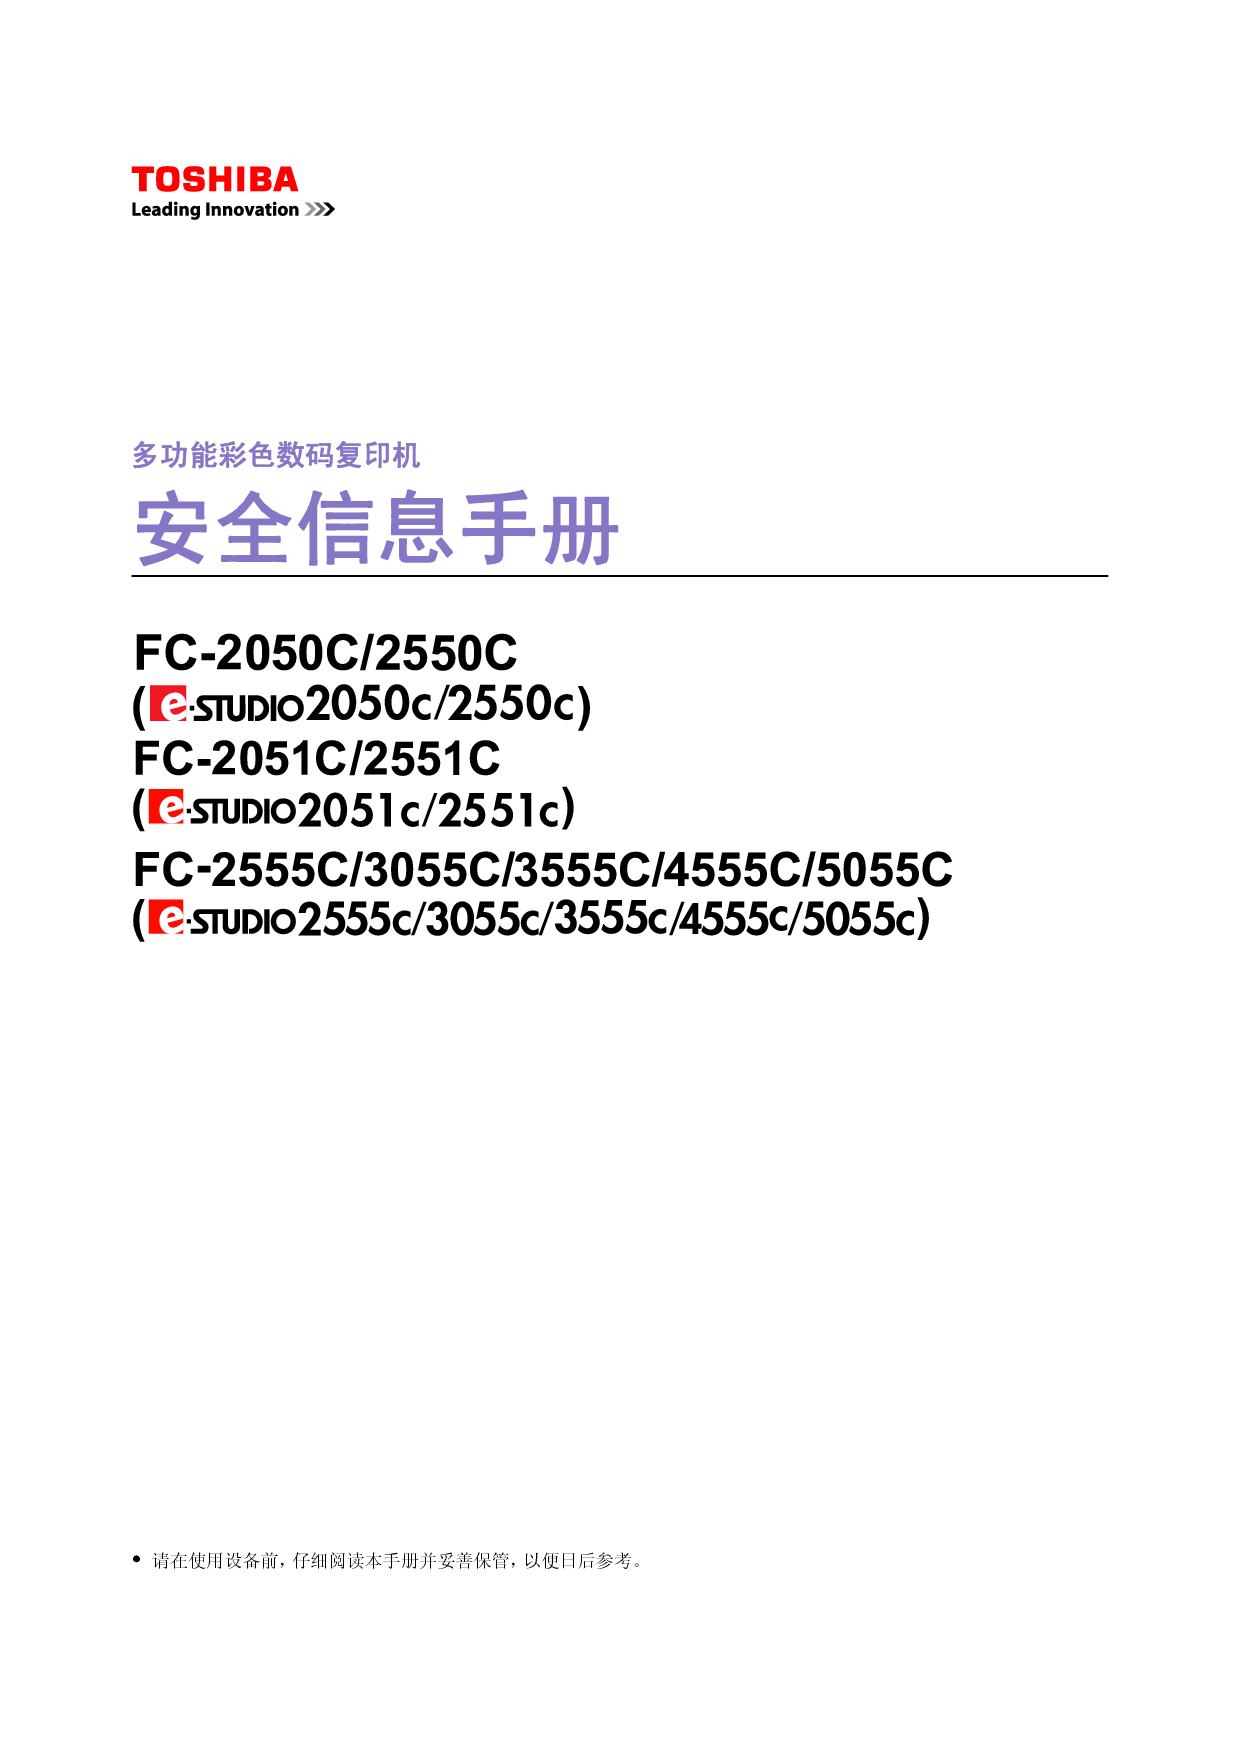 东芝 Toshiba FC-2050C, FC-3555C, e-STUDIO 2050C 安全信息 用户手册 封面